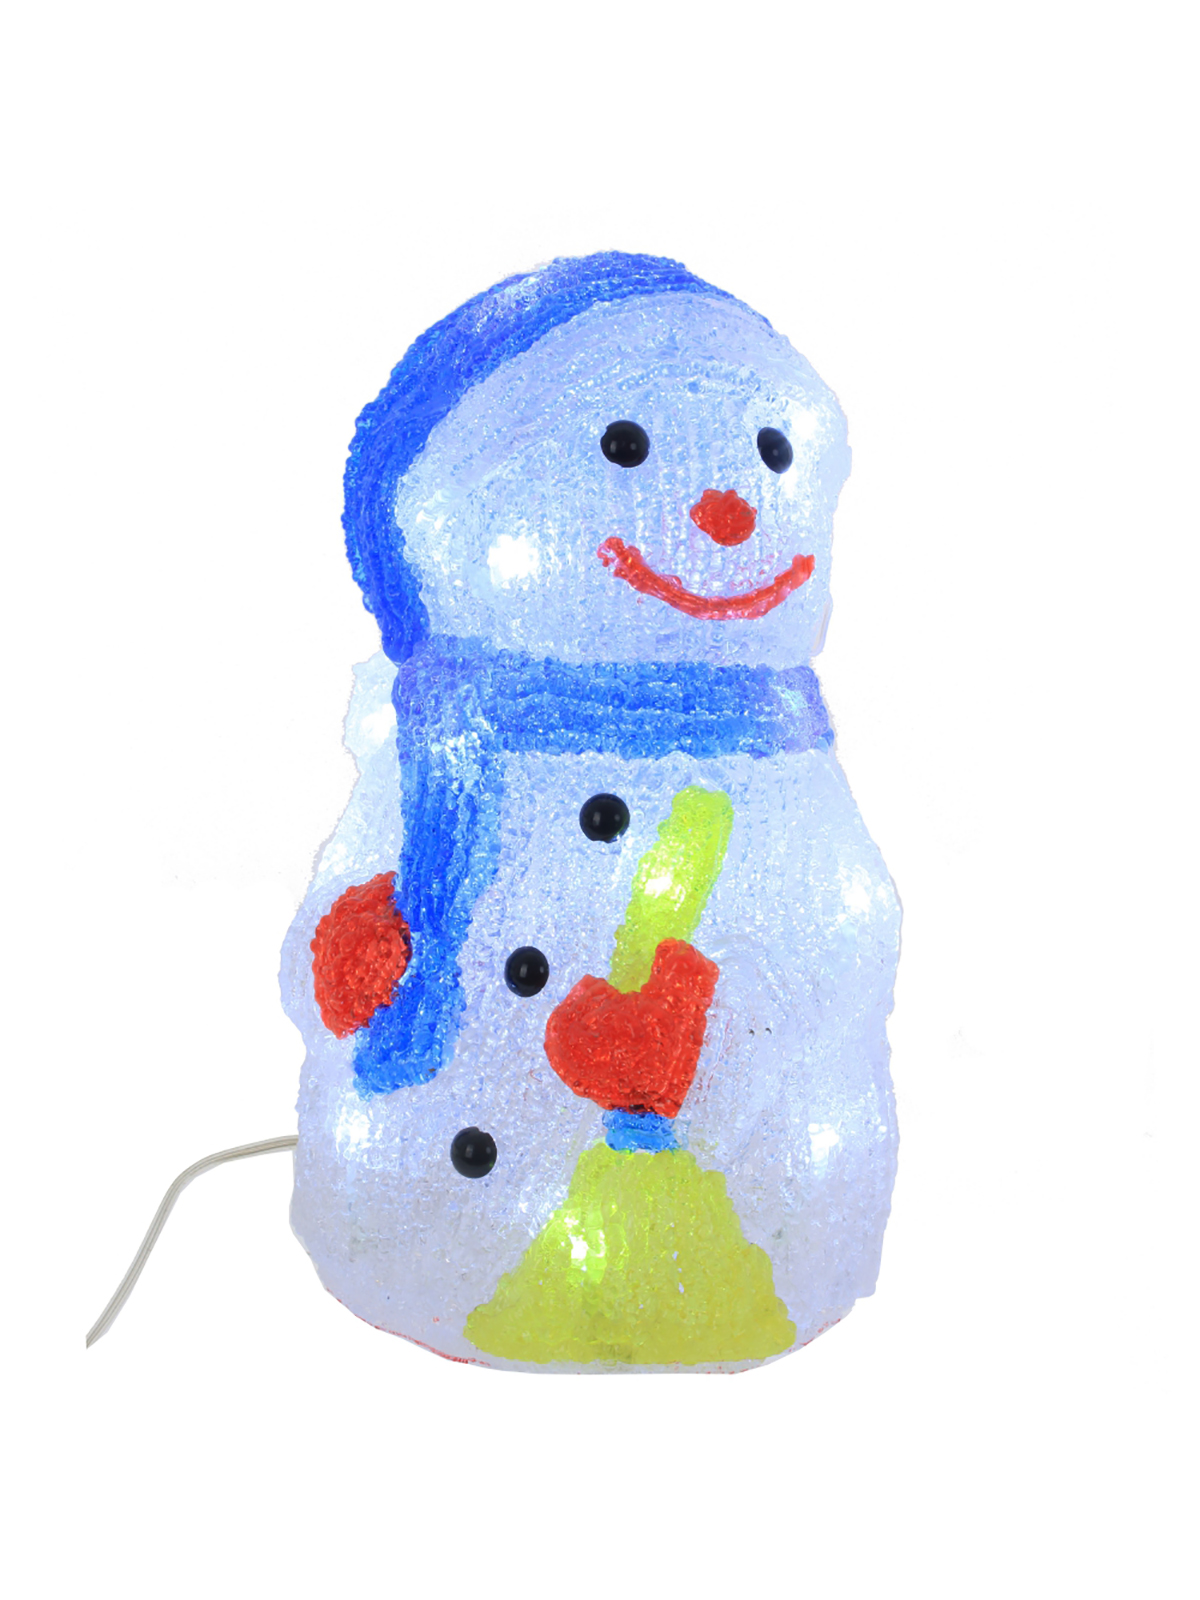 Новогодняя фигурка Remecoclub Снеговик с подсветкой 701801]REM 14x14x25 см